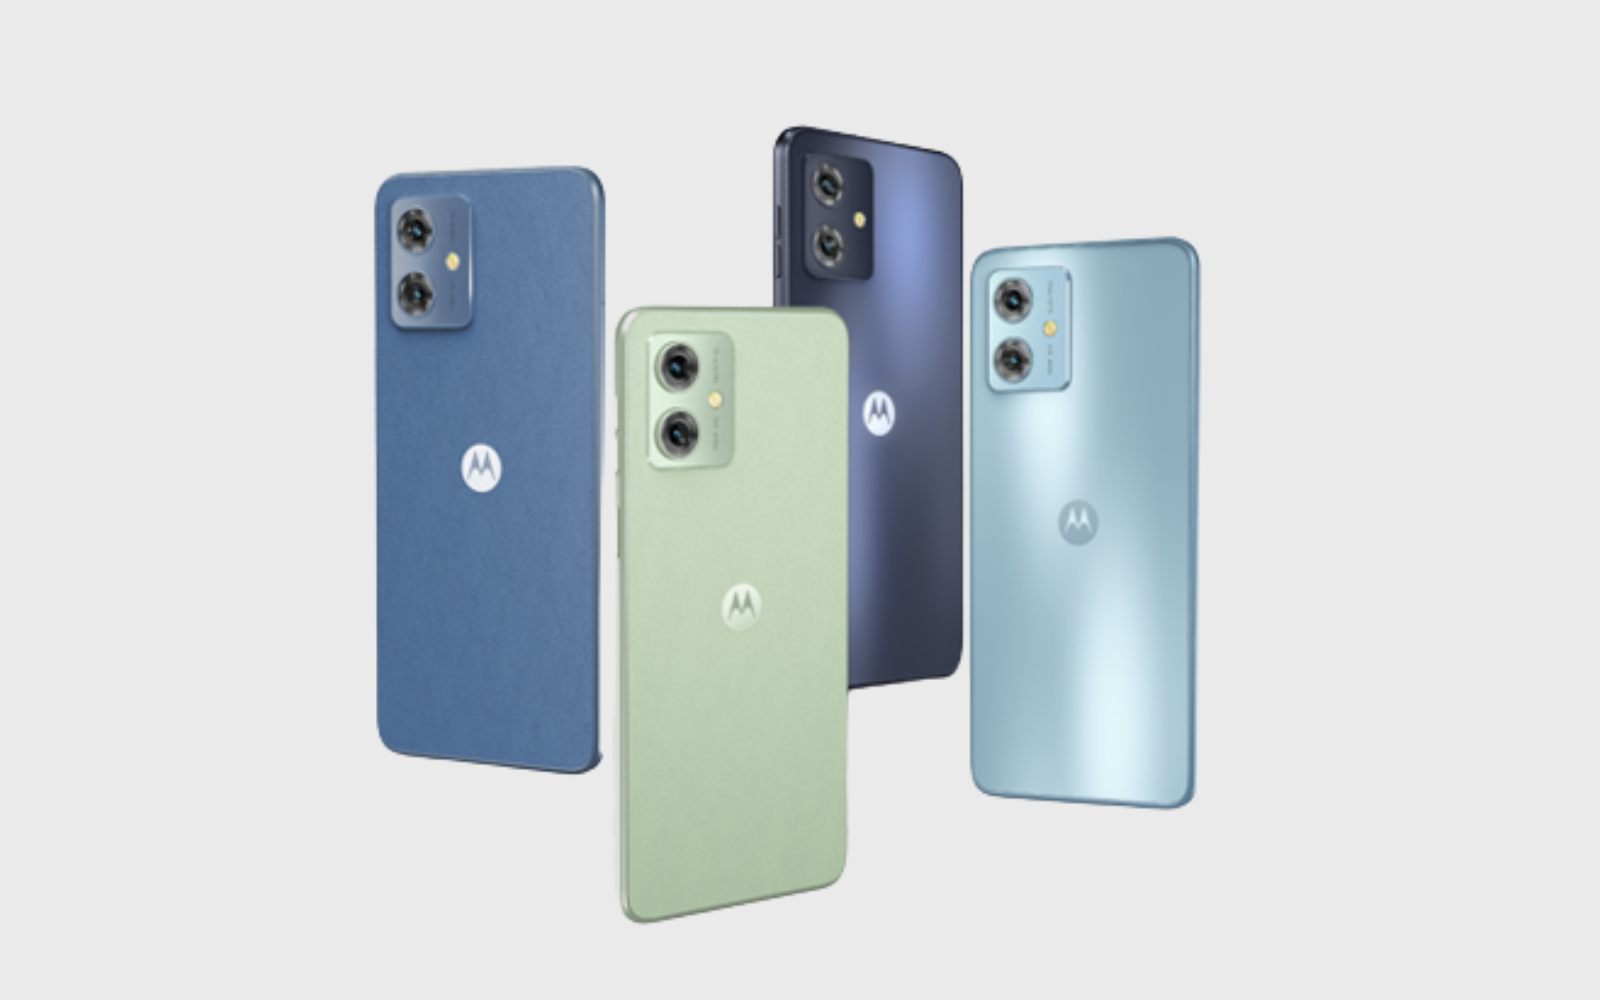 Lançado em setembro, o Moto G54 é a melhor opção da Motorola para essa faixa de preço. O smartphone vem com processador Dimensity 7020, da MediaTek, e bateria de 5.000 mAh. A câmera principal tem 50 MP, acompanhada de lente macro de 2 MP. Na parte frontal, a câmera selfie tem 16 MP. A tela tem 6,5 polegadas e o celular é vendido nas cores azul e verde. Na versão com 4 GB de RAM e 128 GB de memória, o Moto G54 é encontrado por a partir de R$ 1,3 mil.